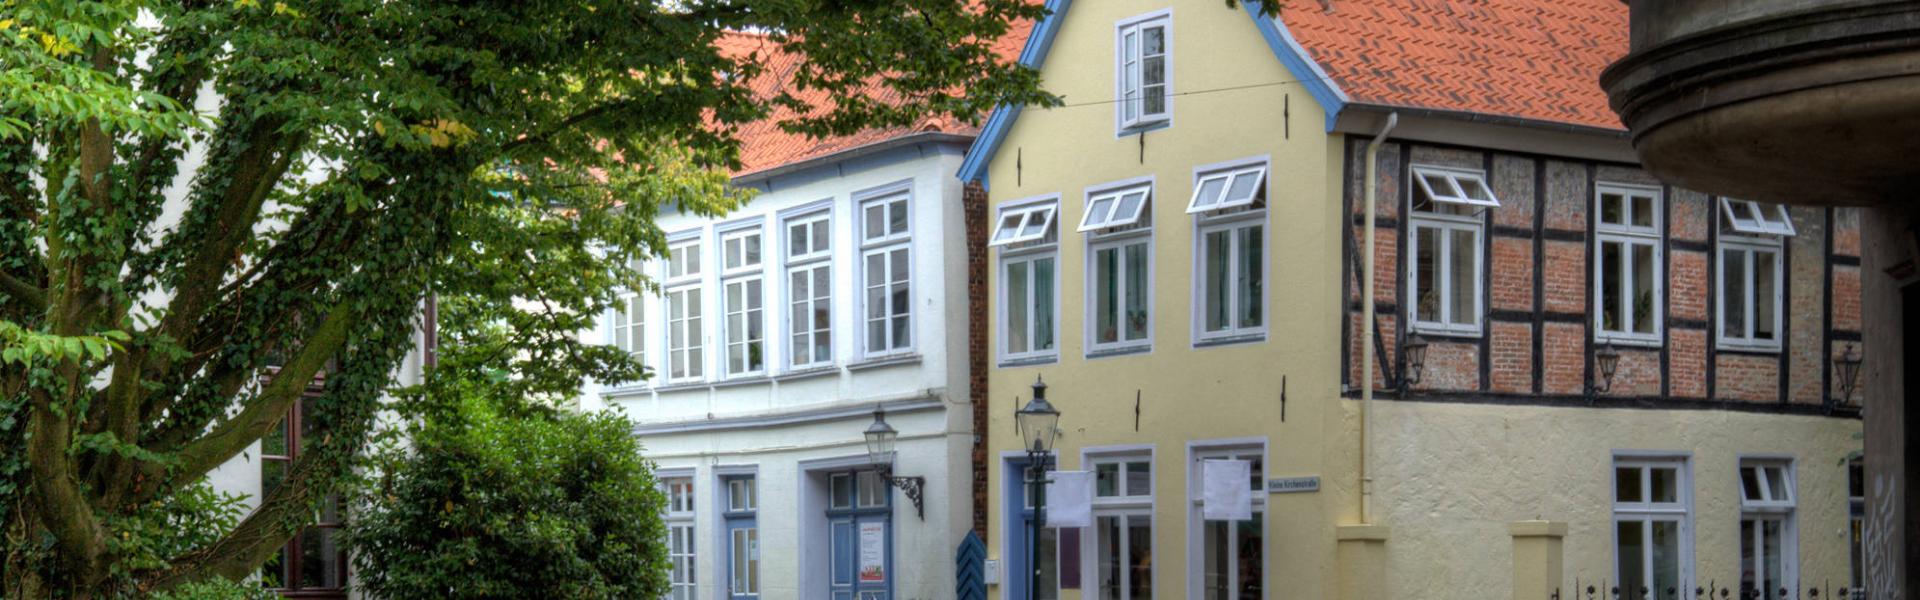 Unterkünfte & Ferienwohnungen in Oldenburg - HomeToGo